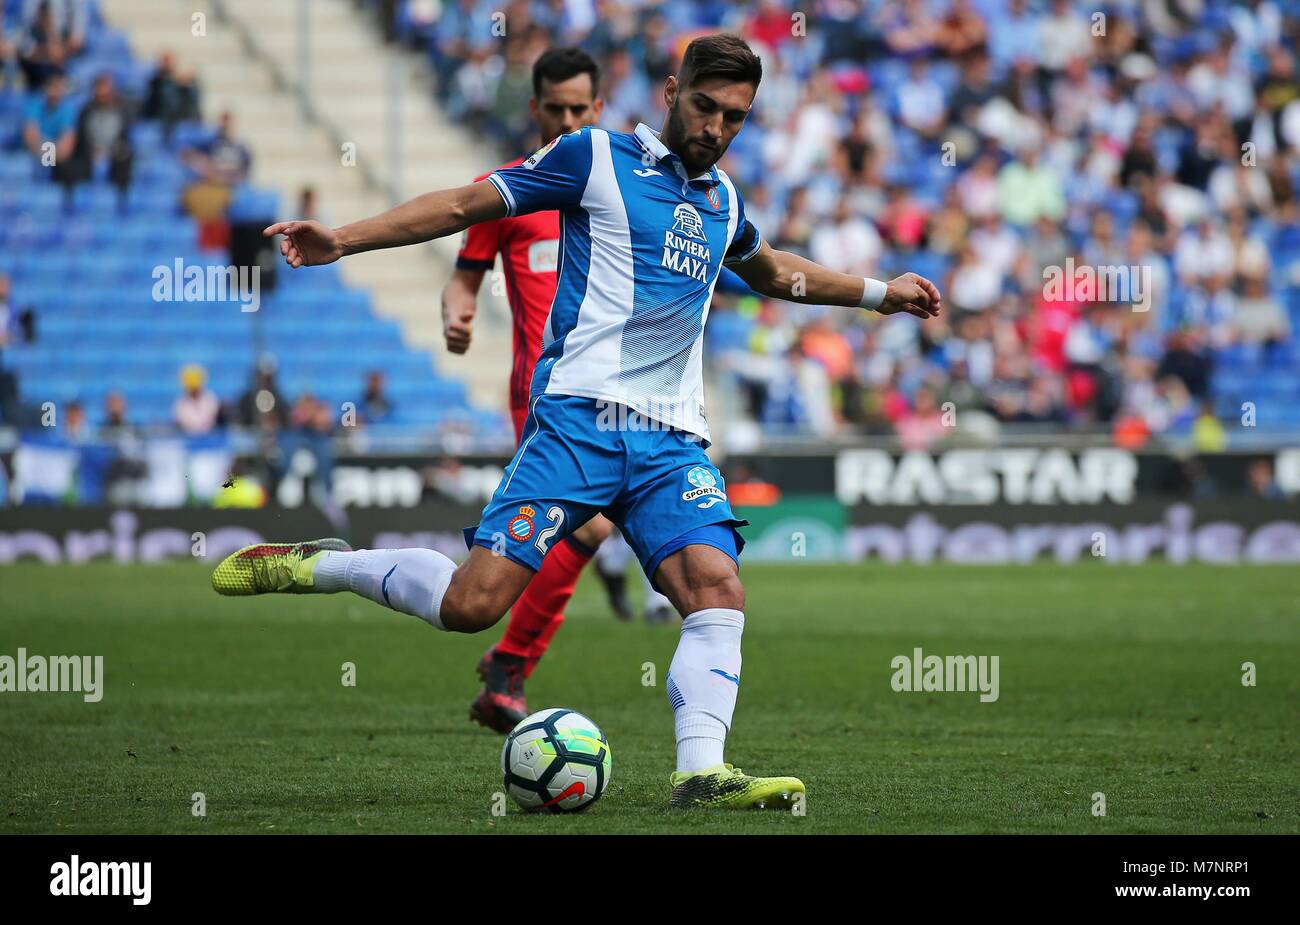 España - 11 de marzo: Navarro durante el partido entre el RCD Espanyol vs Sociedad, por la Ronda 28 de la Liga de Santander, jugado en el estadio RCD Espanyol